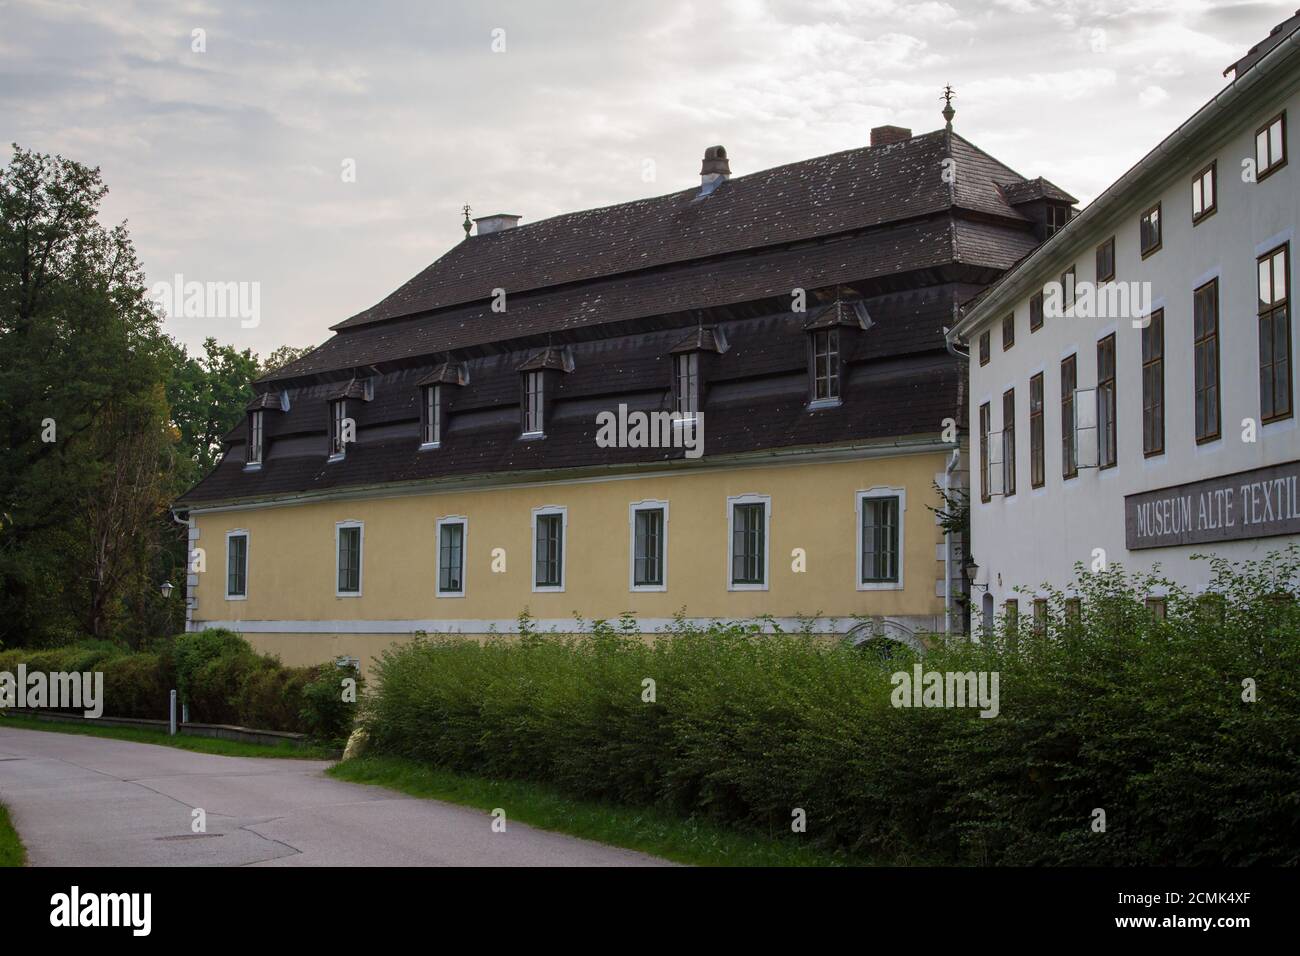 Alte Bekleidungsfabrik - Textilmuseum in Weitra, Waldviertel, Österreich Stockfoto